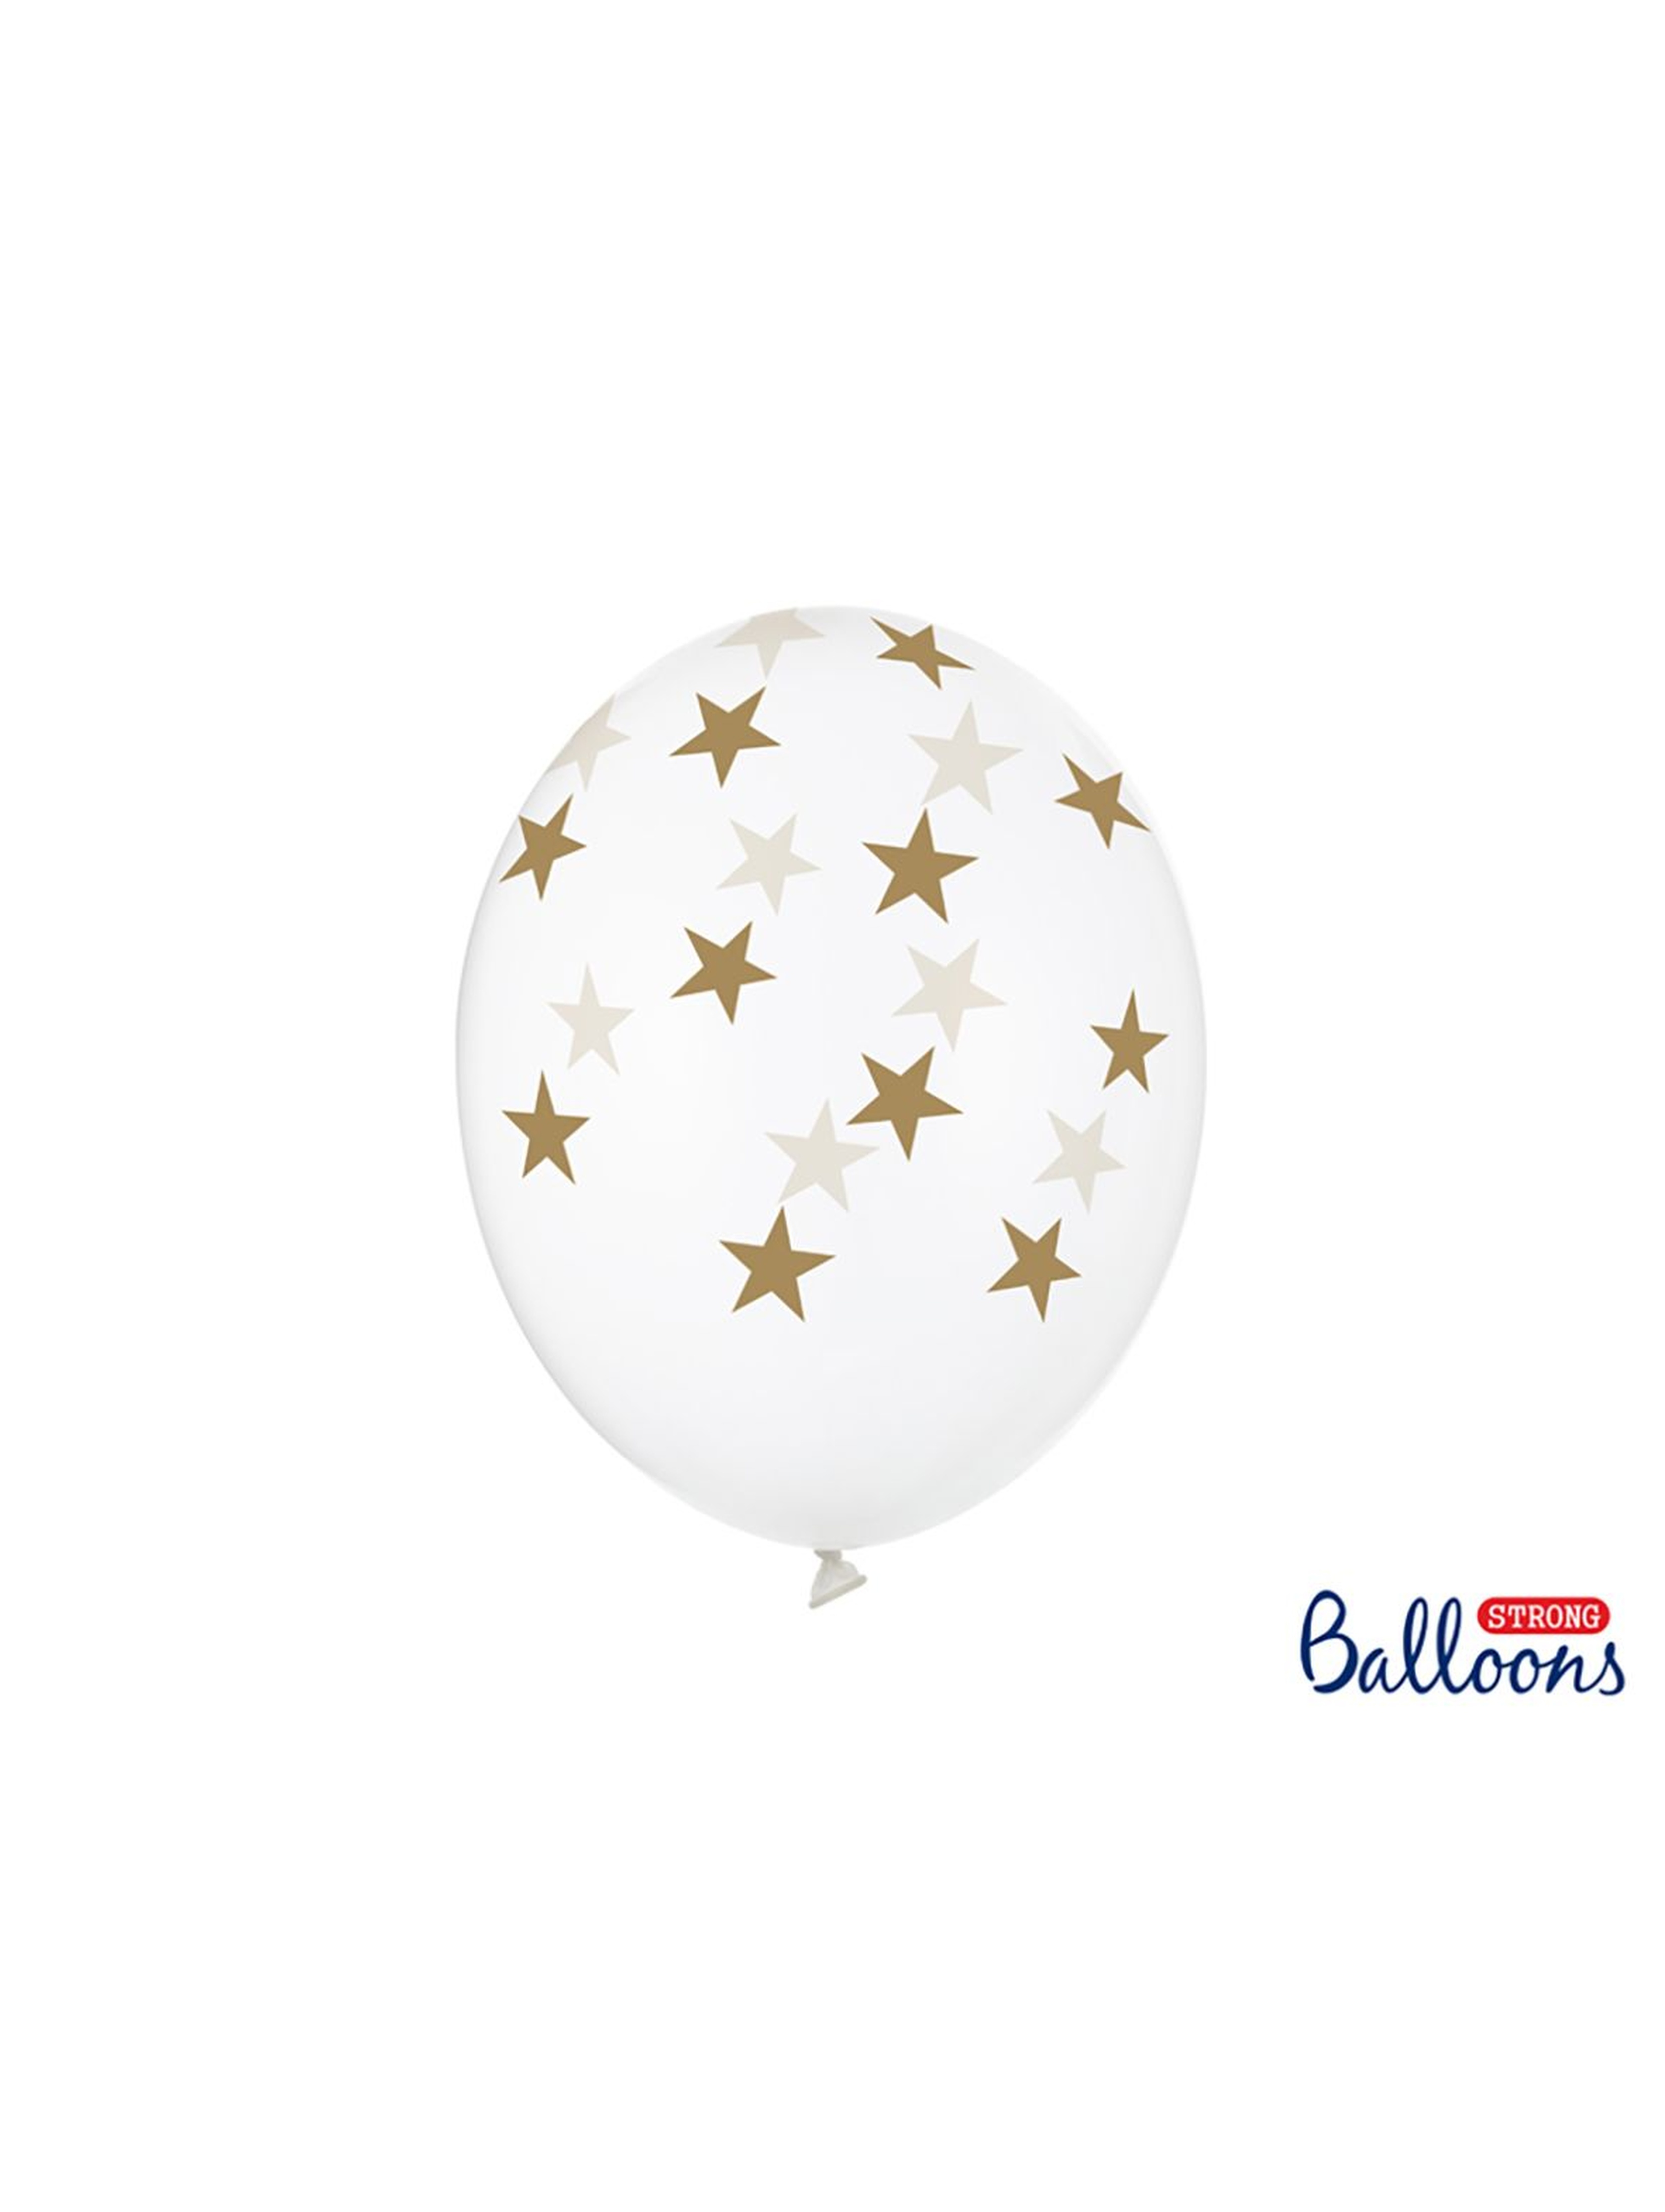 Balony 30 cm w złote gwiazdki - Crystal Clear 6 sztuk